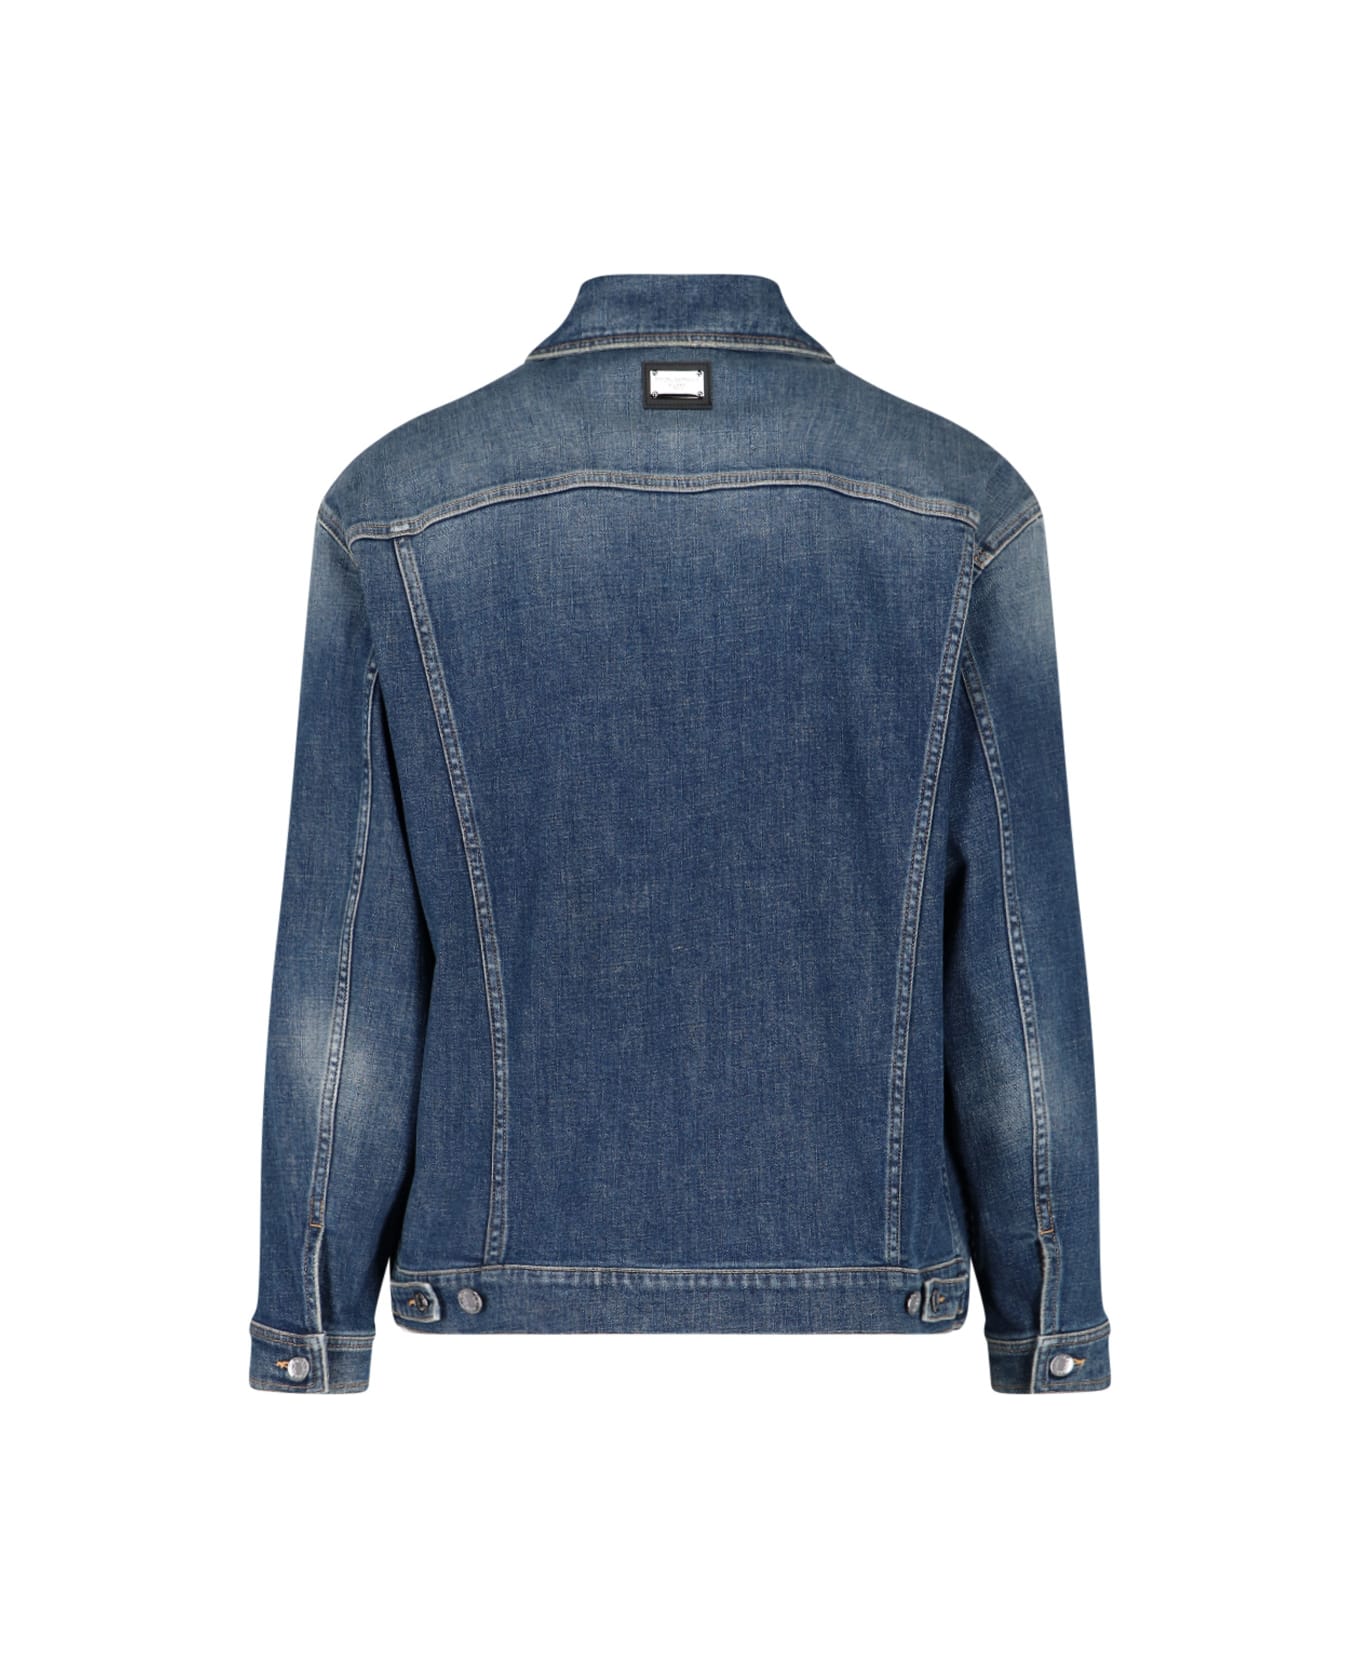 Dolce & Gabbana Collared Button-up Denim Jacket - Blue ジャケット